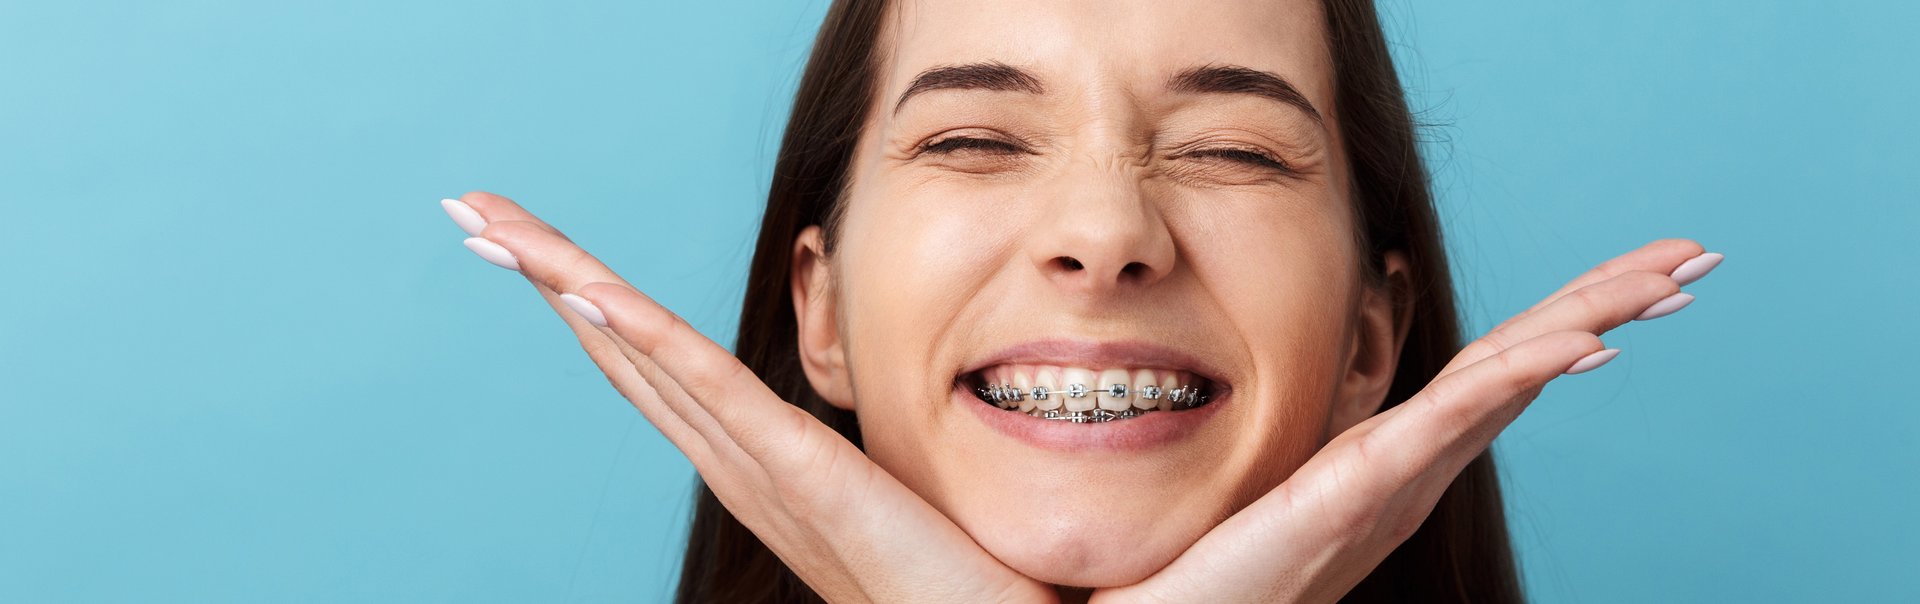 Eine junge Frau mit Zahnspange lacht.